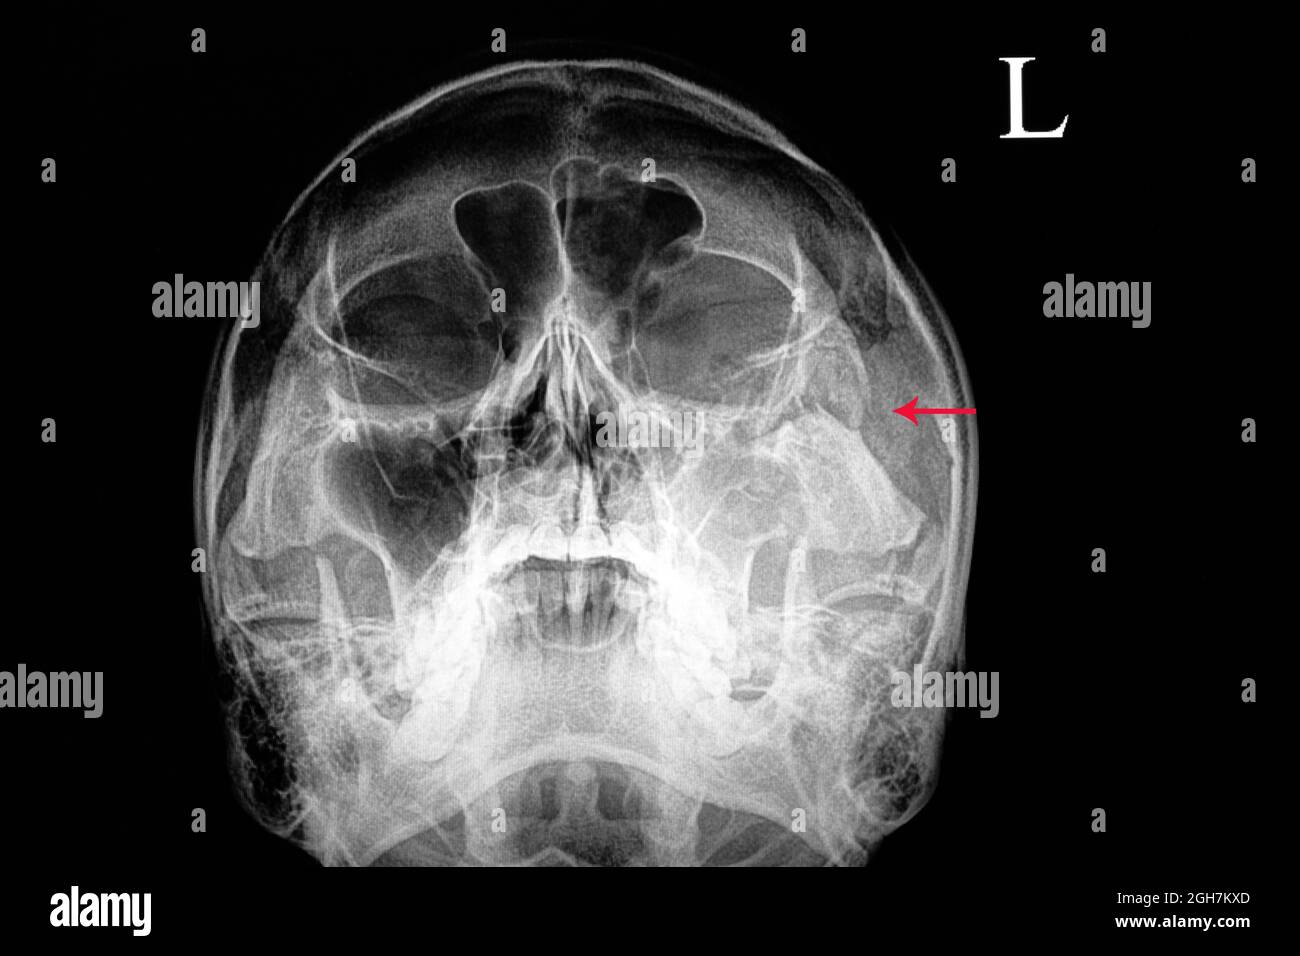 film radiographique d'un crâne d'un patient souffrant d'une lésion  traumatique montrant une fracture de l'os zygomatique gauche et une sinusite  traumatique Photo Stock - Alamy